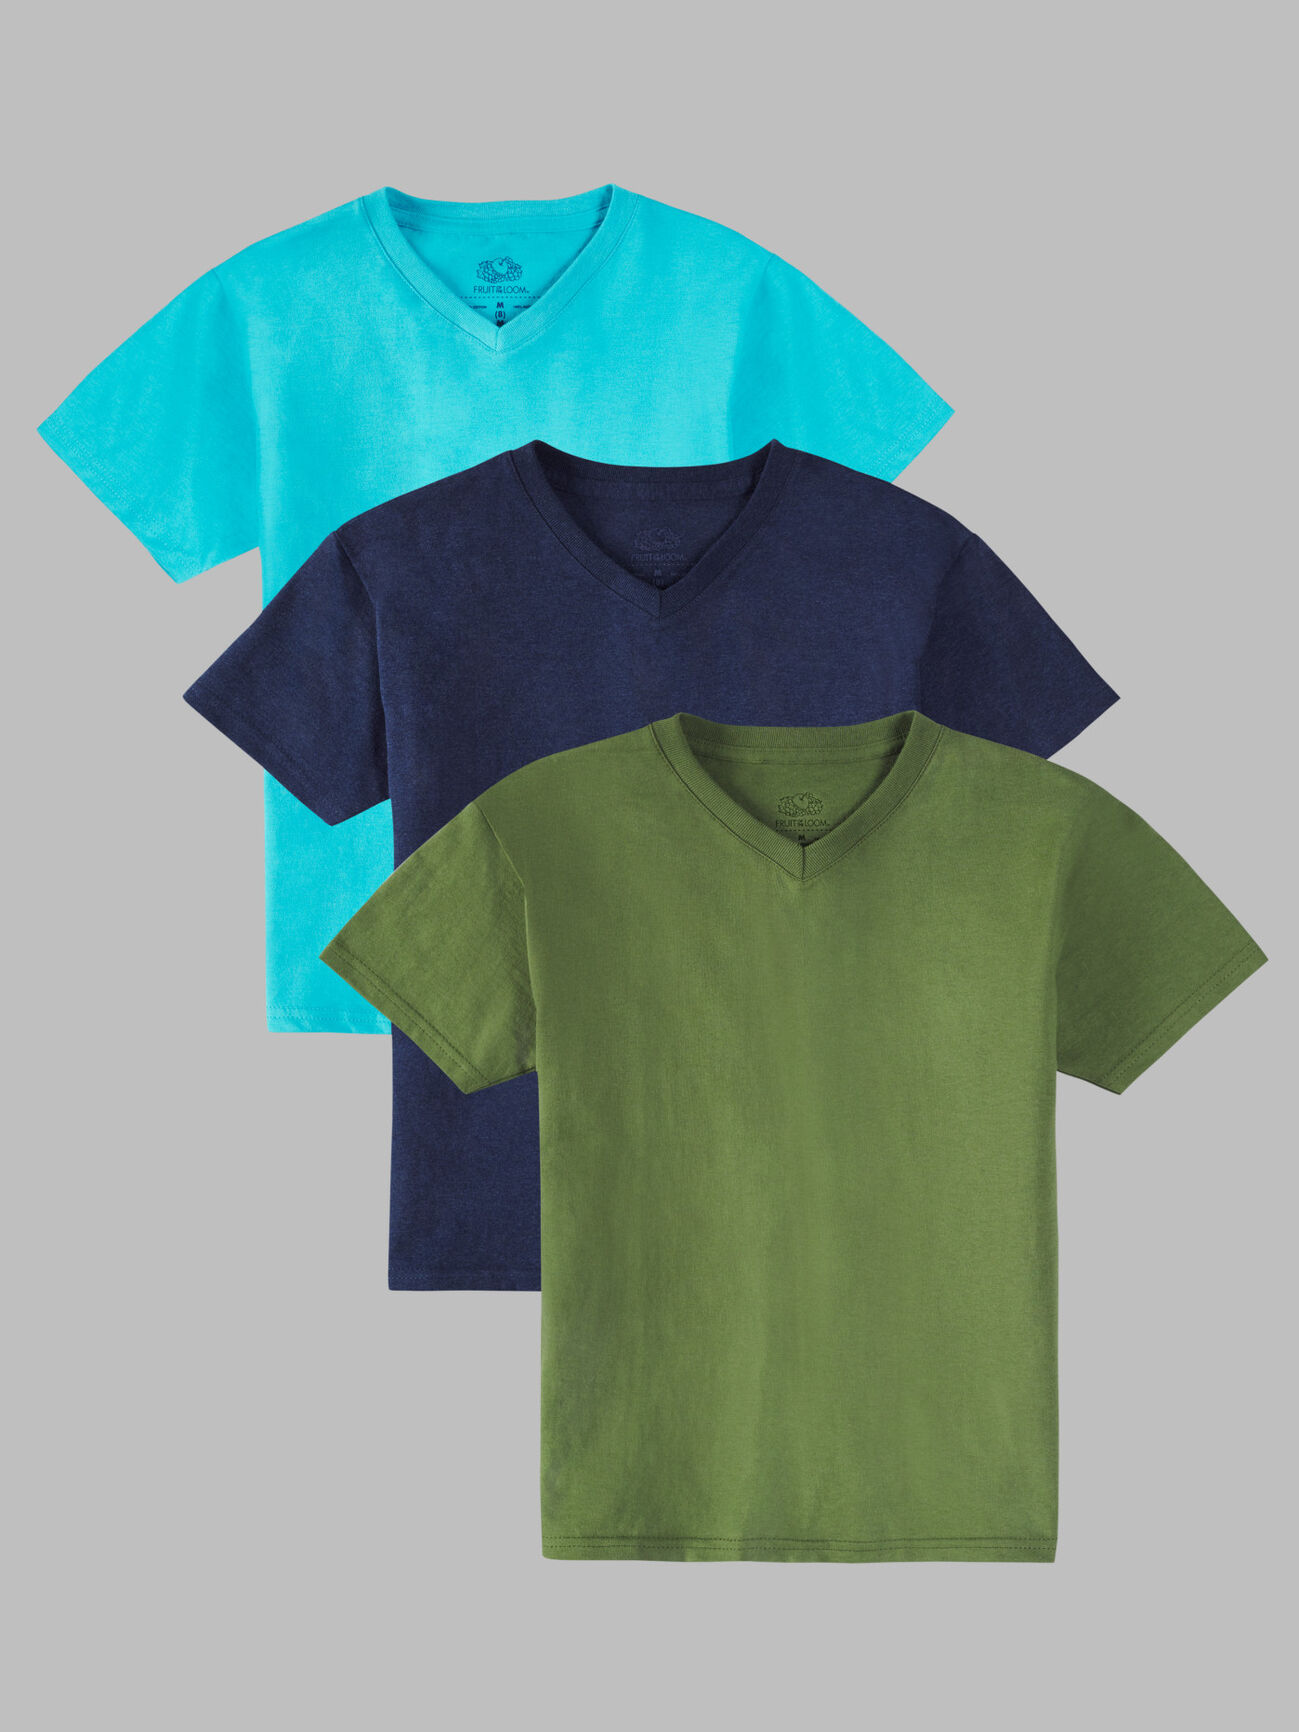 Boys' Supersoft Short Sleeve V-Neck T-Shirt, 3 Pack Bluegrass Asst.